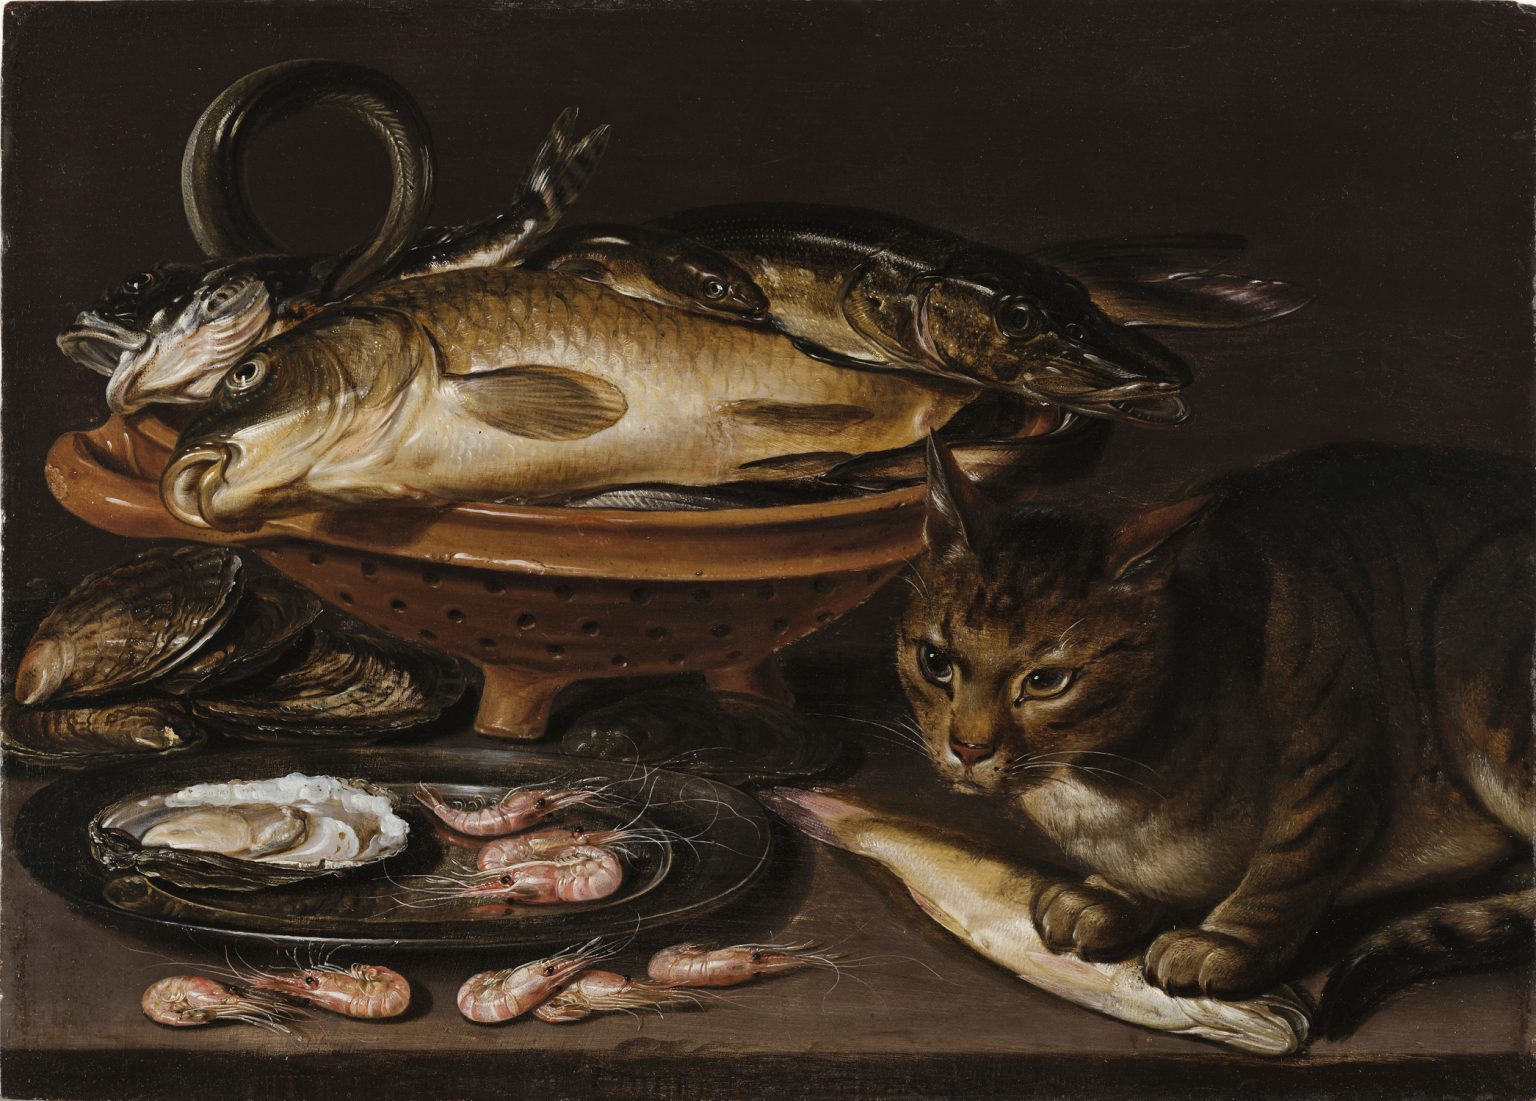 Κλάρα Πέιτερς, Νεκρή φύση των ψαριών και της γάτας (μετά το 1620).